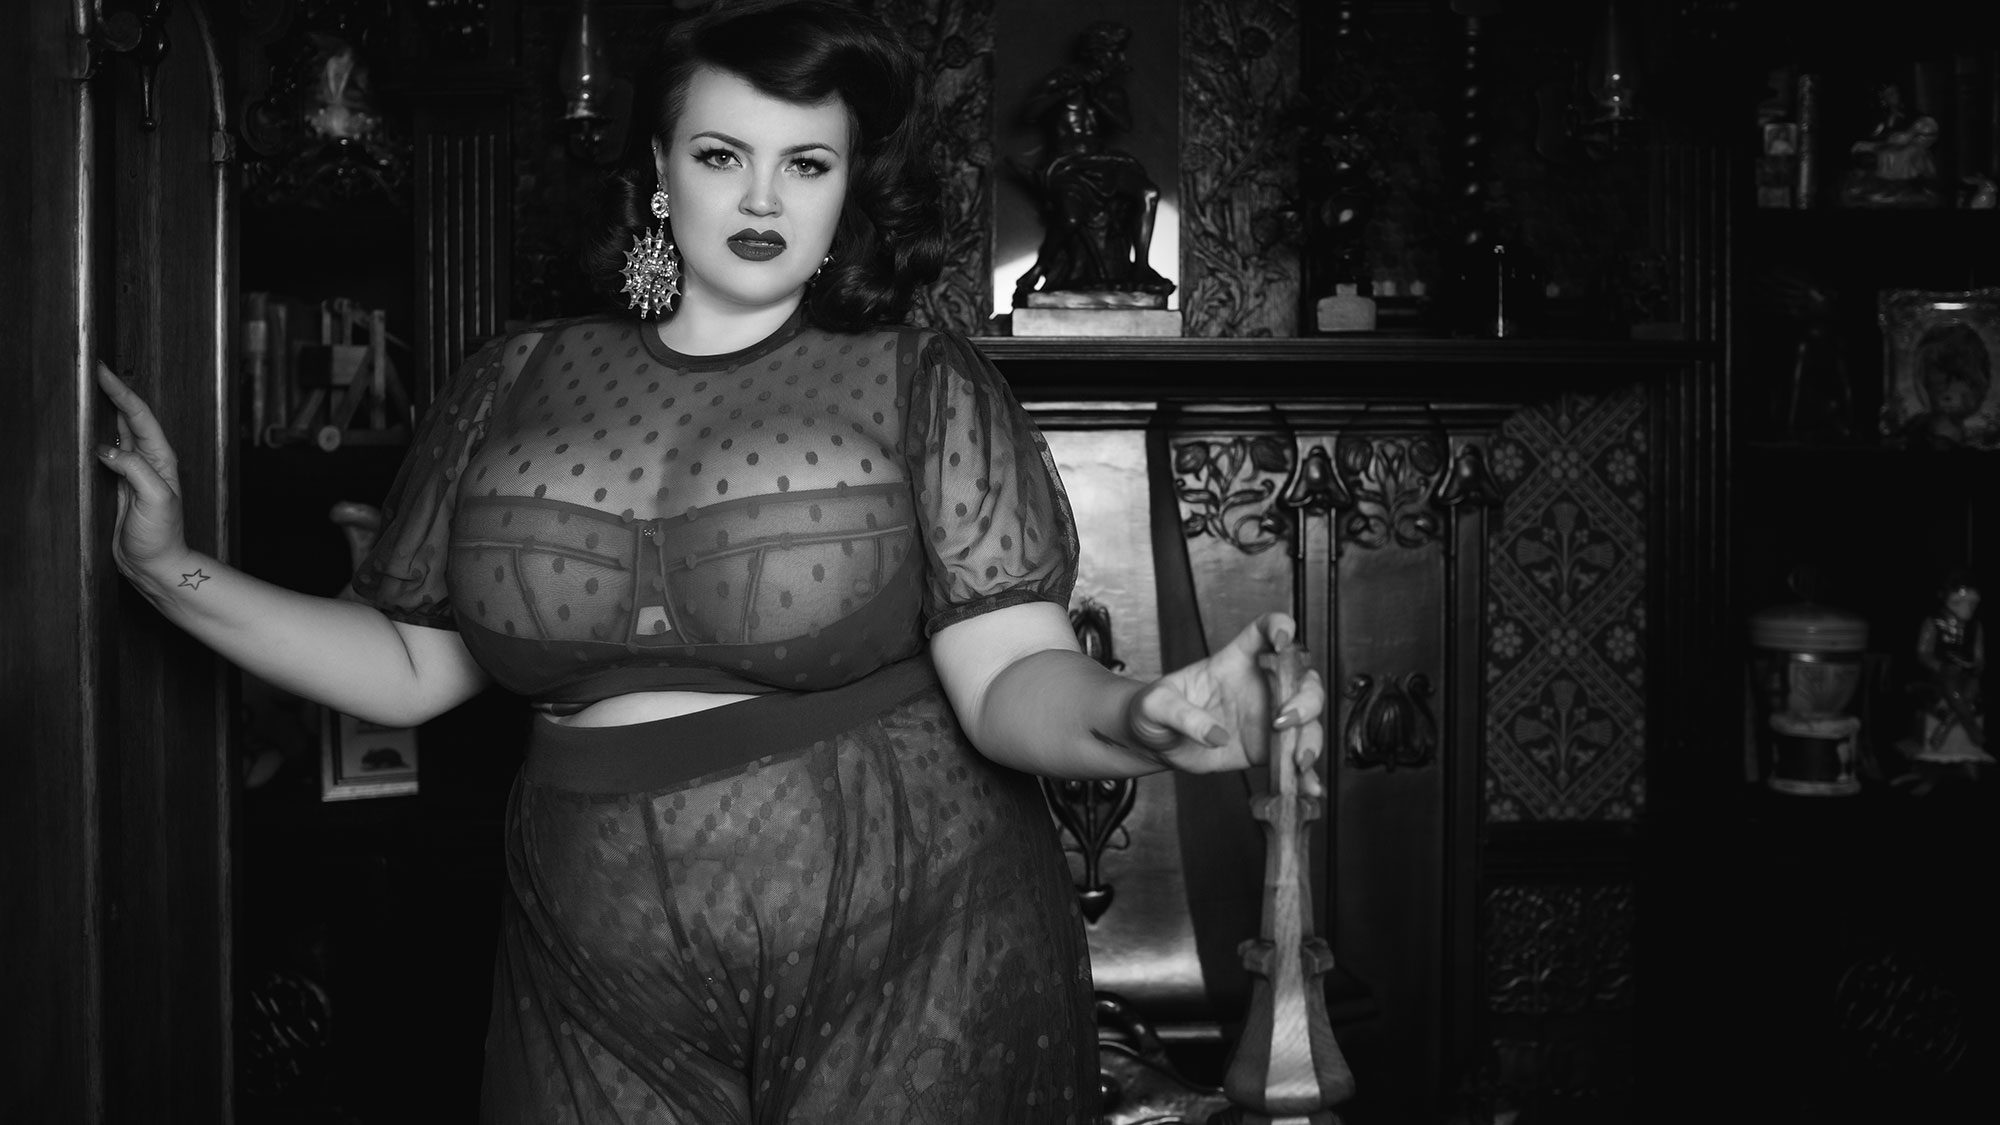 BigBellesMag - Georgina Horne (George) @fullerfigurefullerbust UK based  plus size clothing&lingerie blogger fullerfigurefullerbust.com 💄Beauty  🍽Food 🐀Animals 🏋🏻‍♀️Gym #charlotteenvrac #bigbelleswomen, #curve,  #bigbellesMag #plussizemodel #curvy